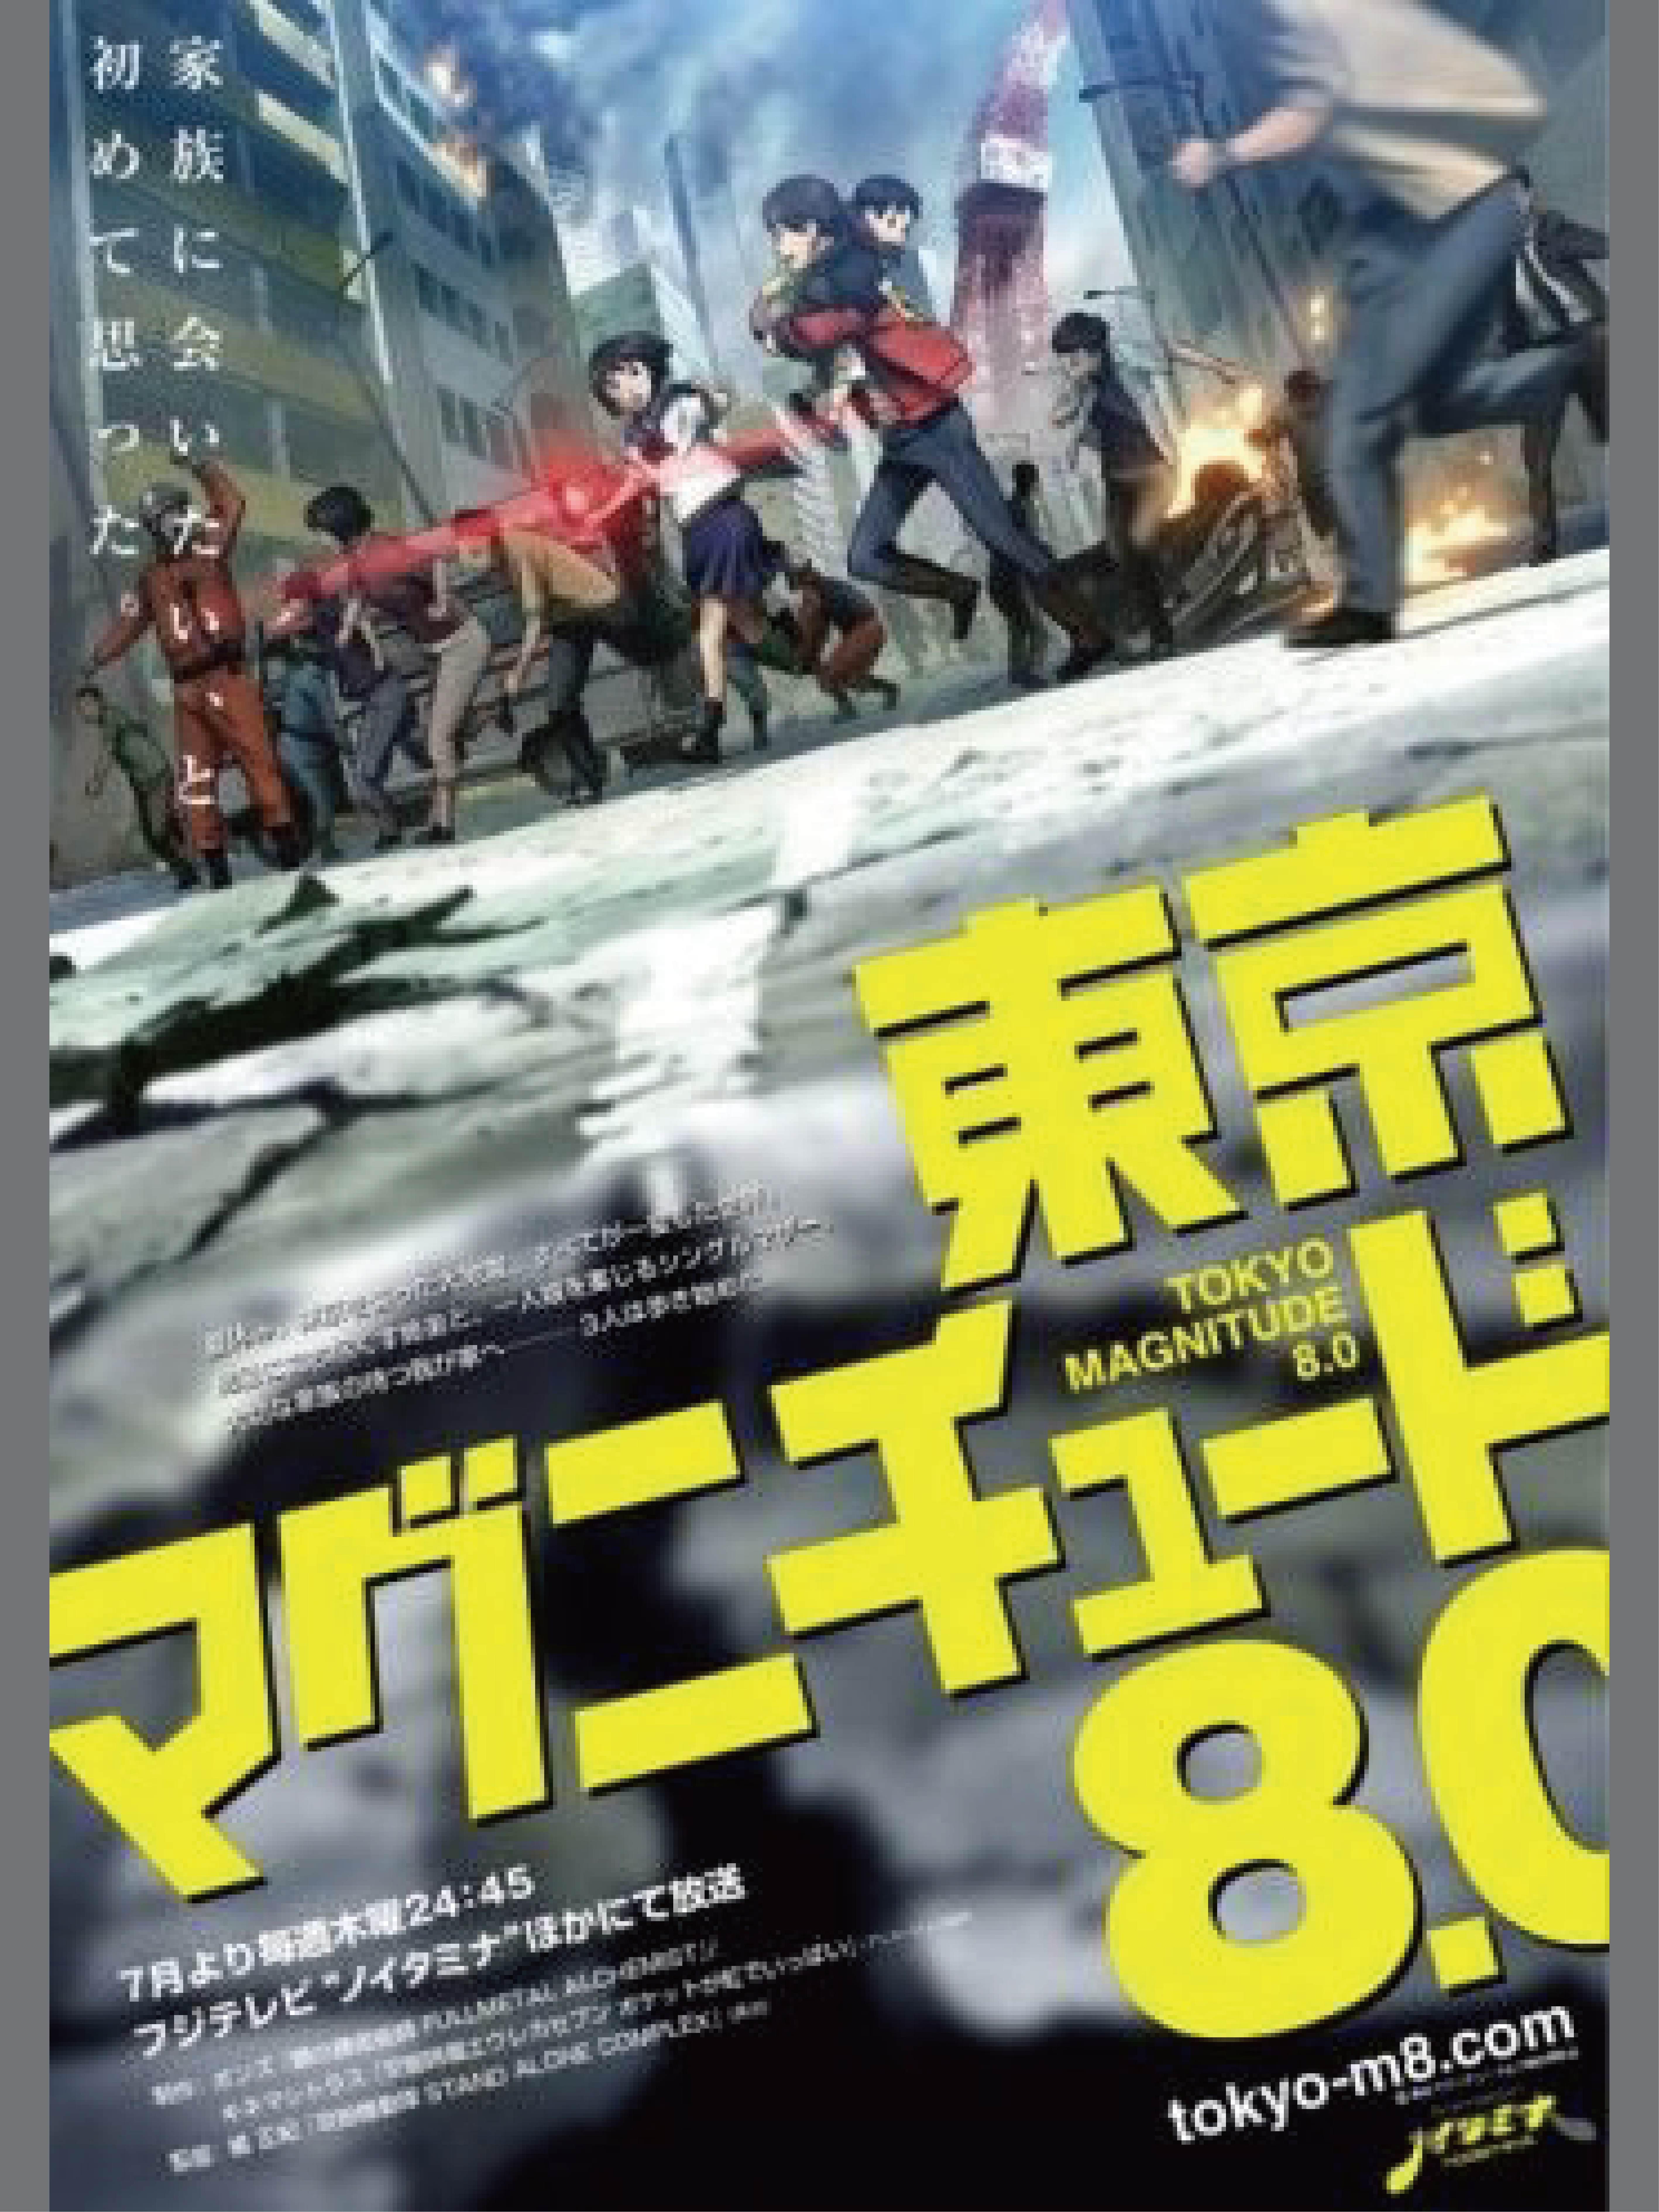 Xem Phim Động đất Tokyo (Tokyo Magunichudo 8.0)